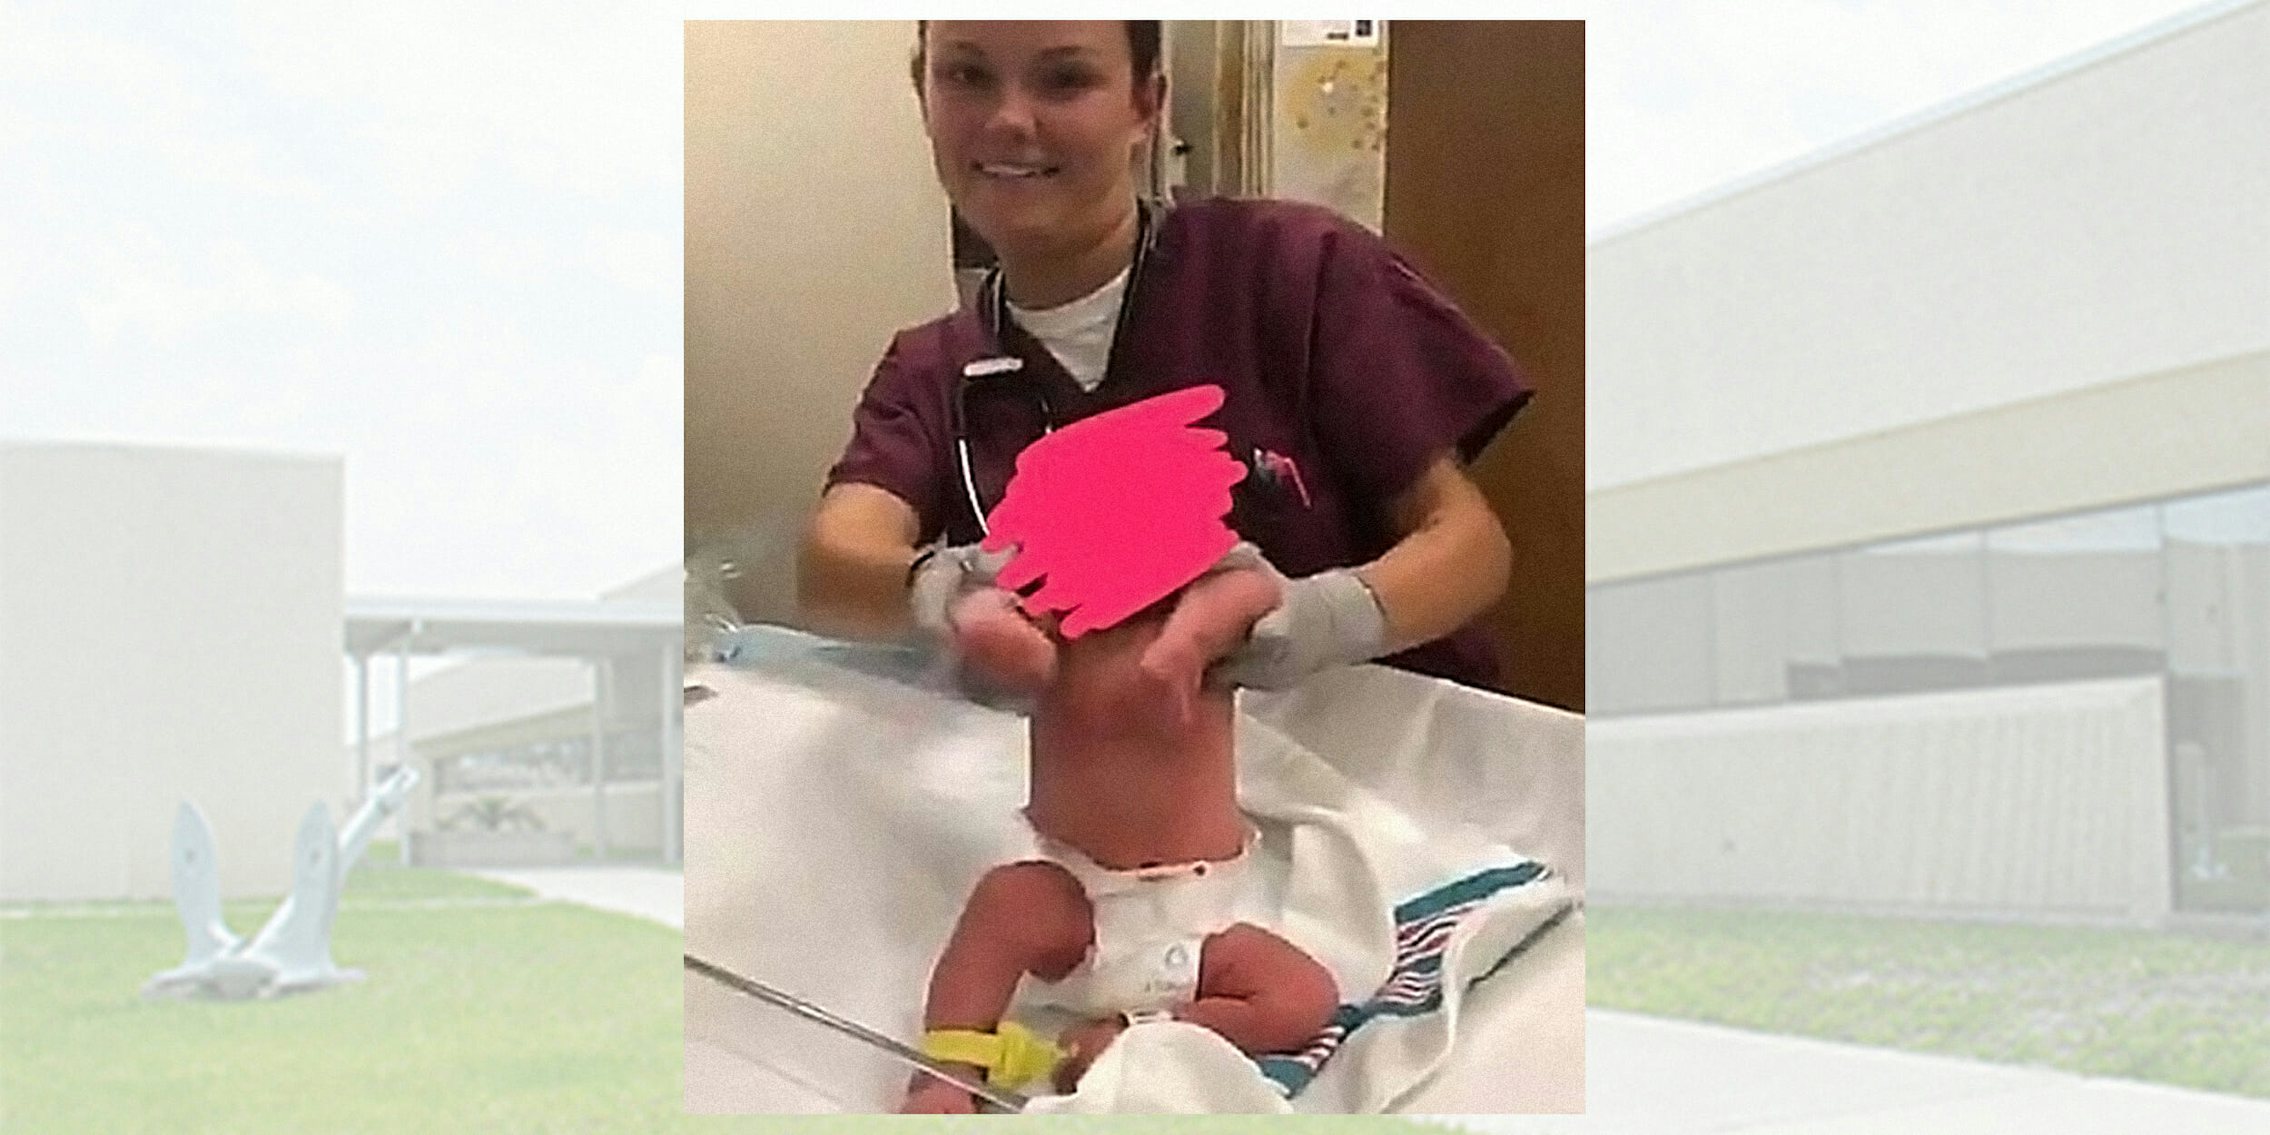 Navy nurse making newborn baby 'dance' to 50 Cent